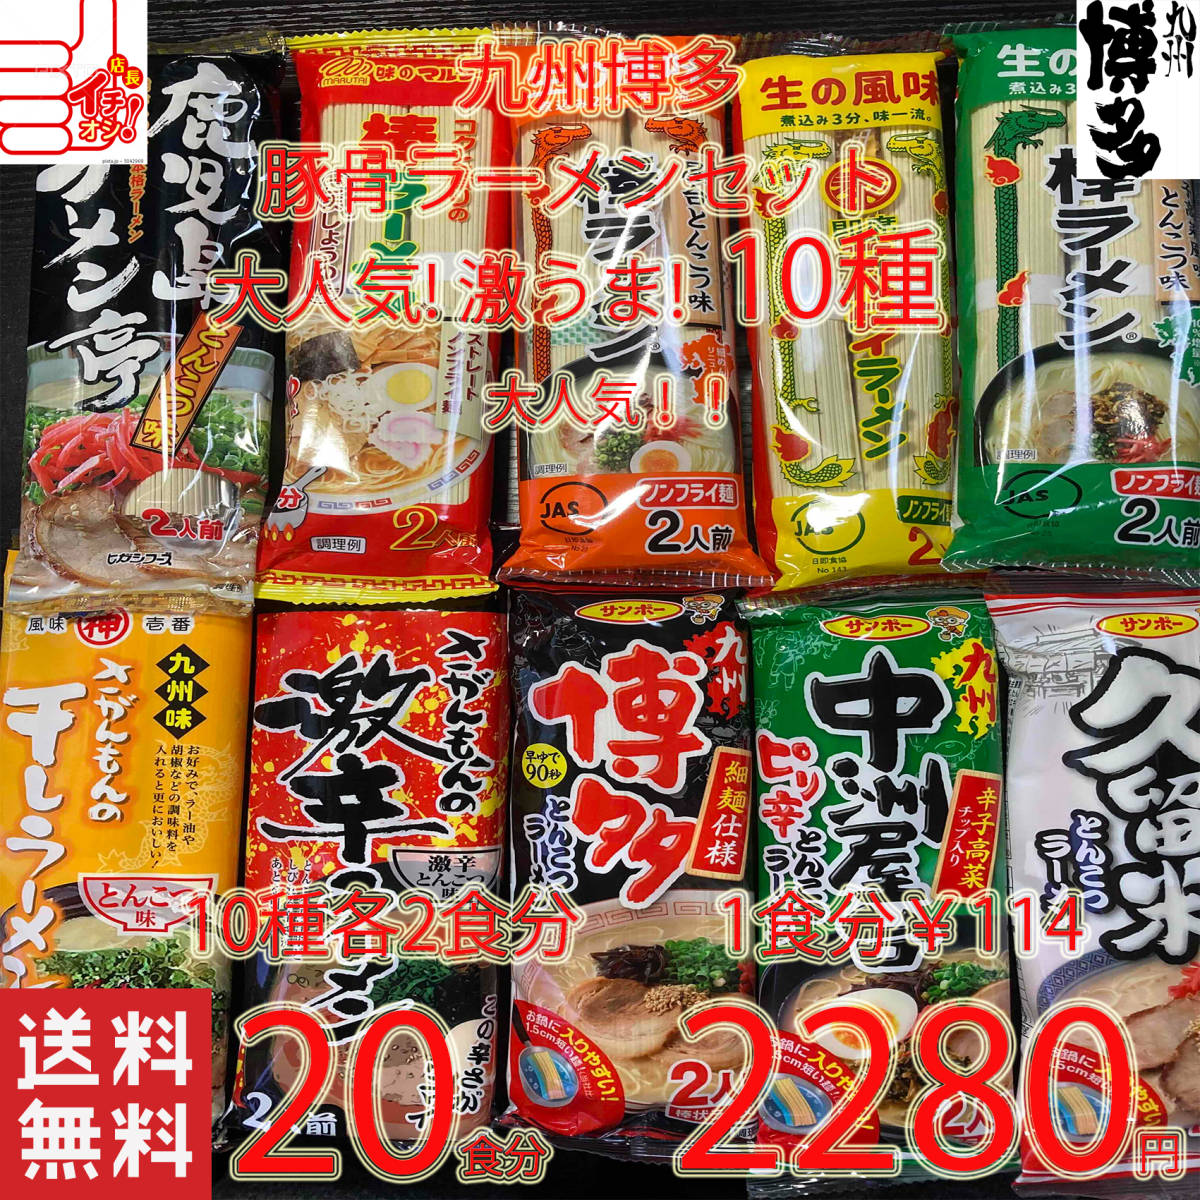  супер-скидка очень популярный ramen Kyushu Hakata свинья . ramen комплект 10 вид рекомендация комплект бесплатная доставка по всей стране Kyushu Hakata ramen 41620